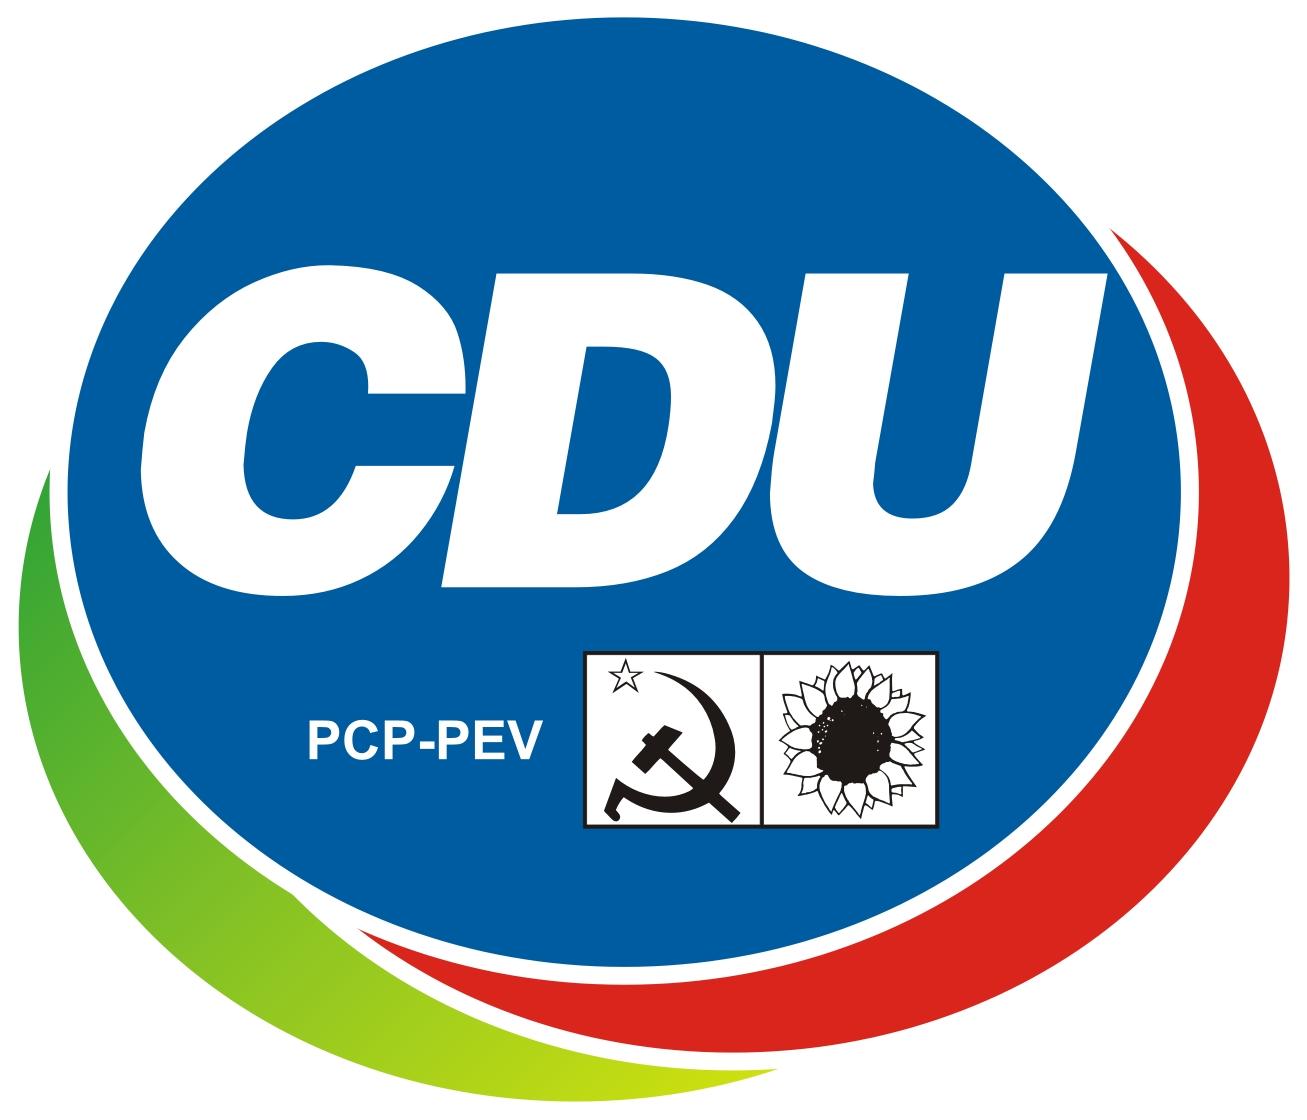 Les communistes portugais (PCP) renforcent leur implantation à Madère